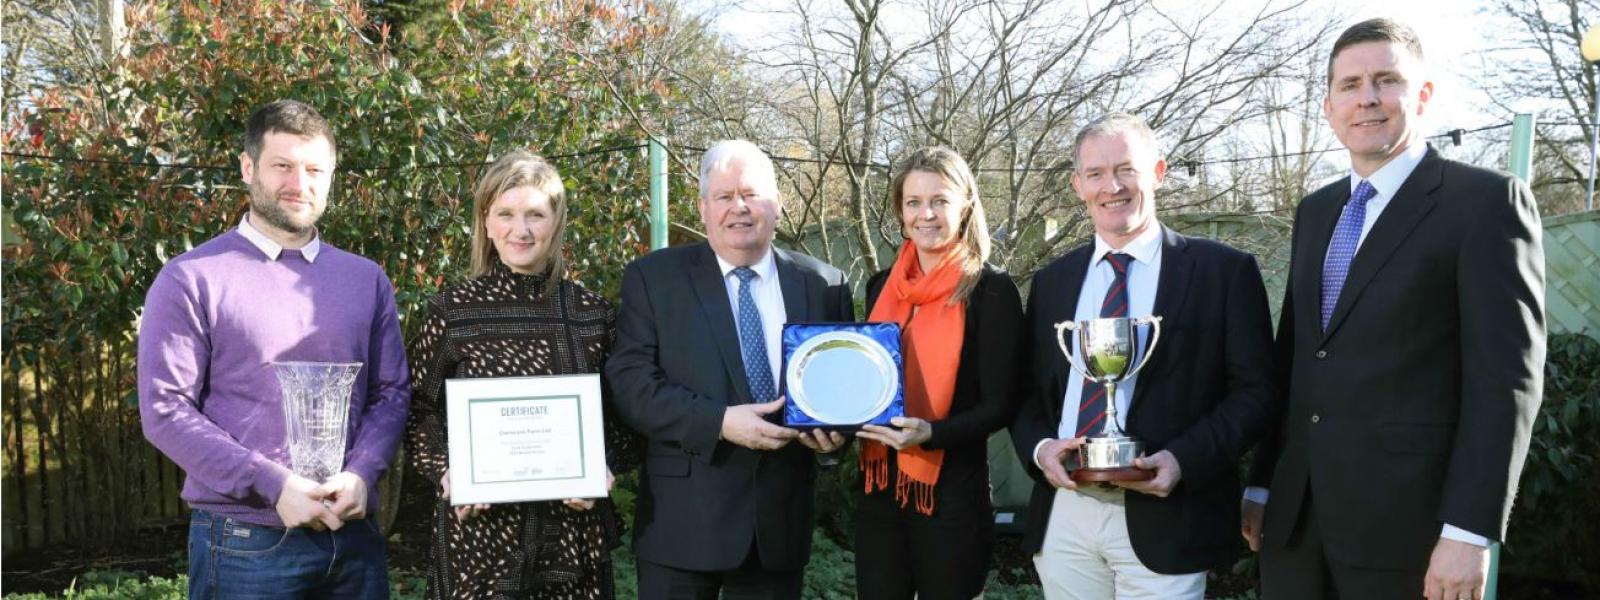 GII grain growers awards winners